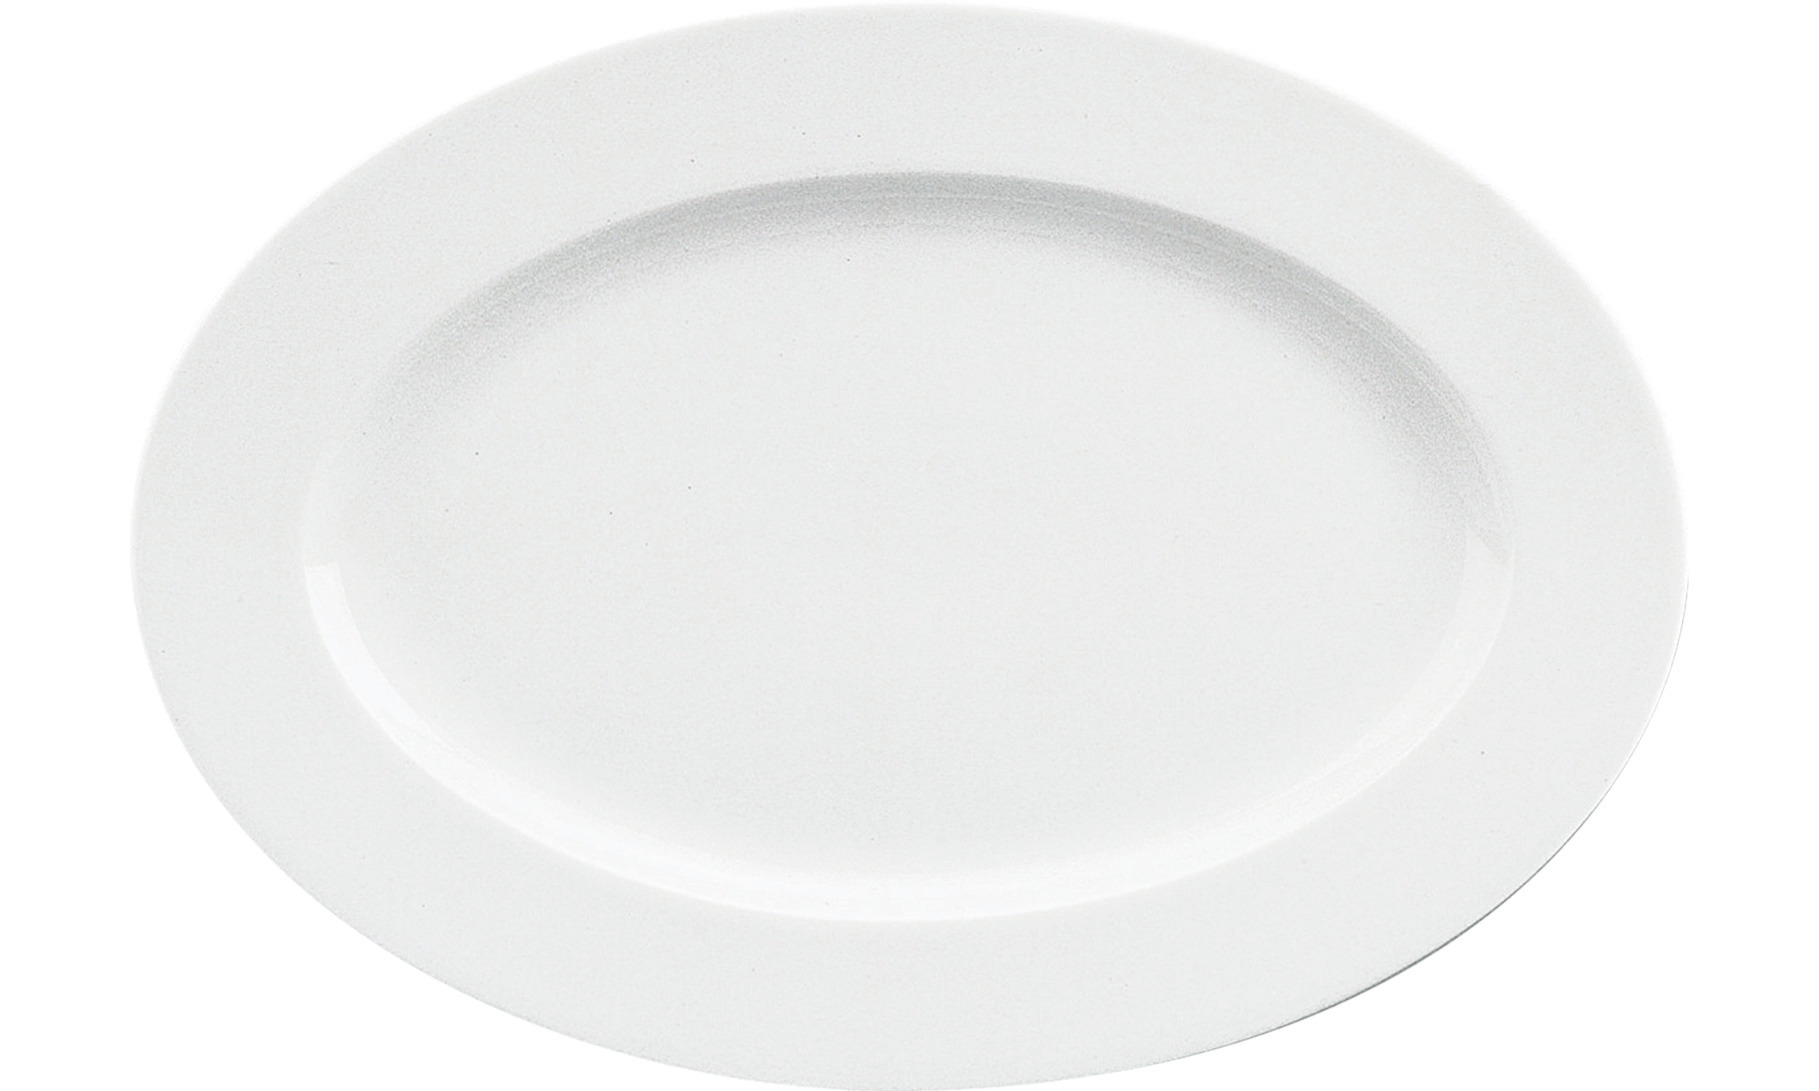 Fine Dining, Platte mit Fahne 328 x 230 mm